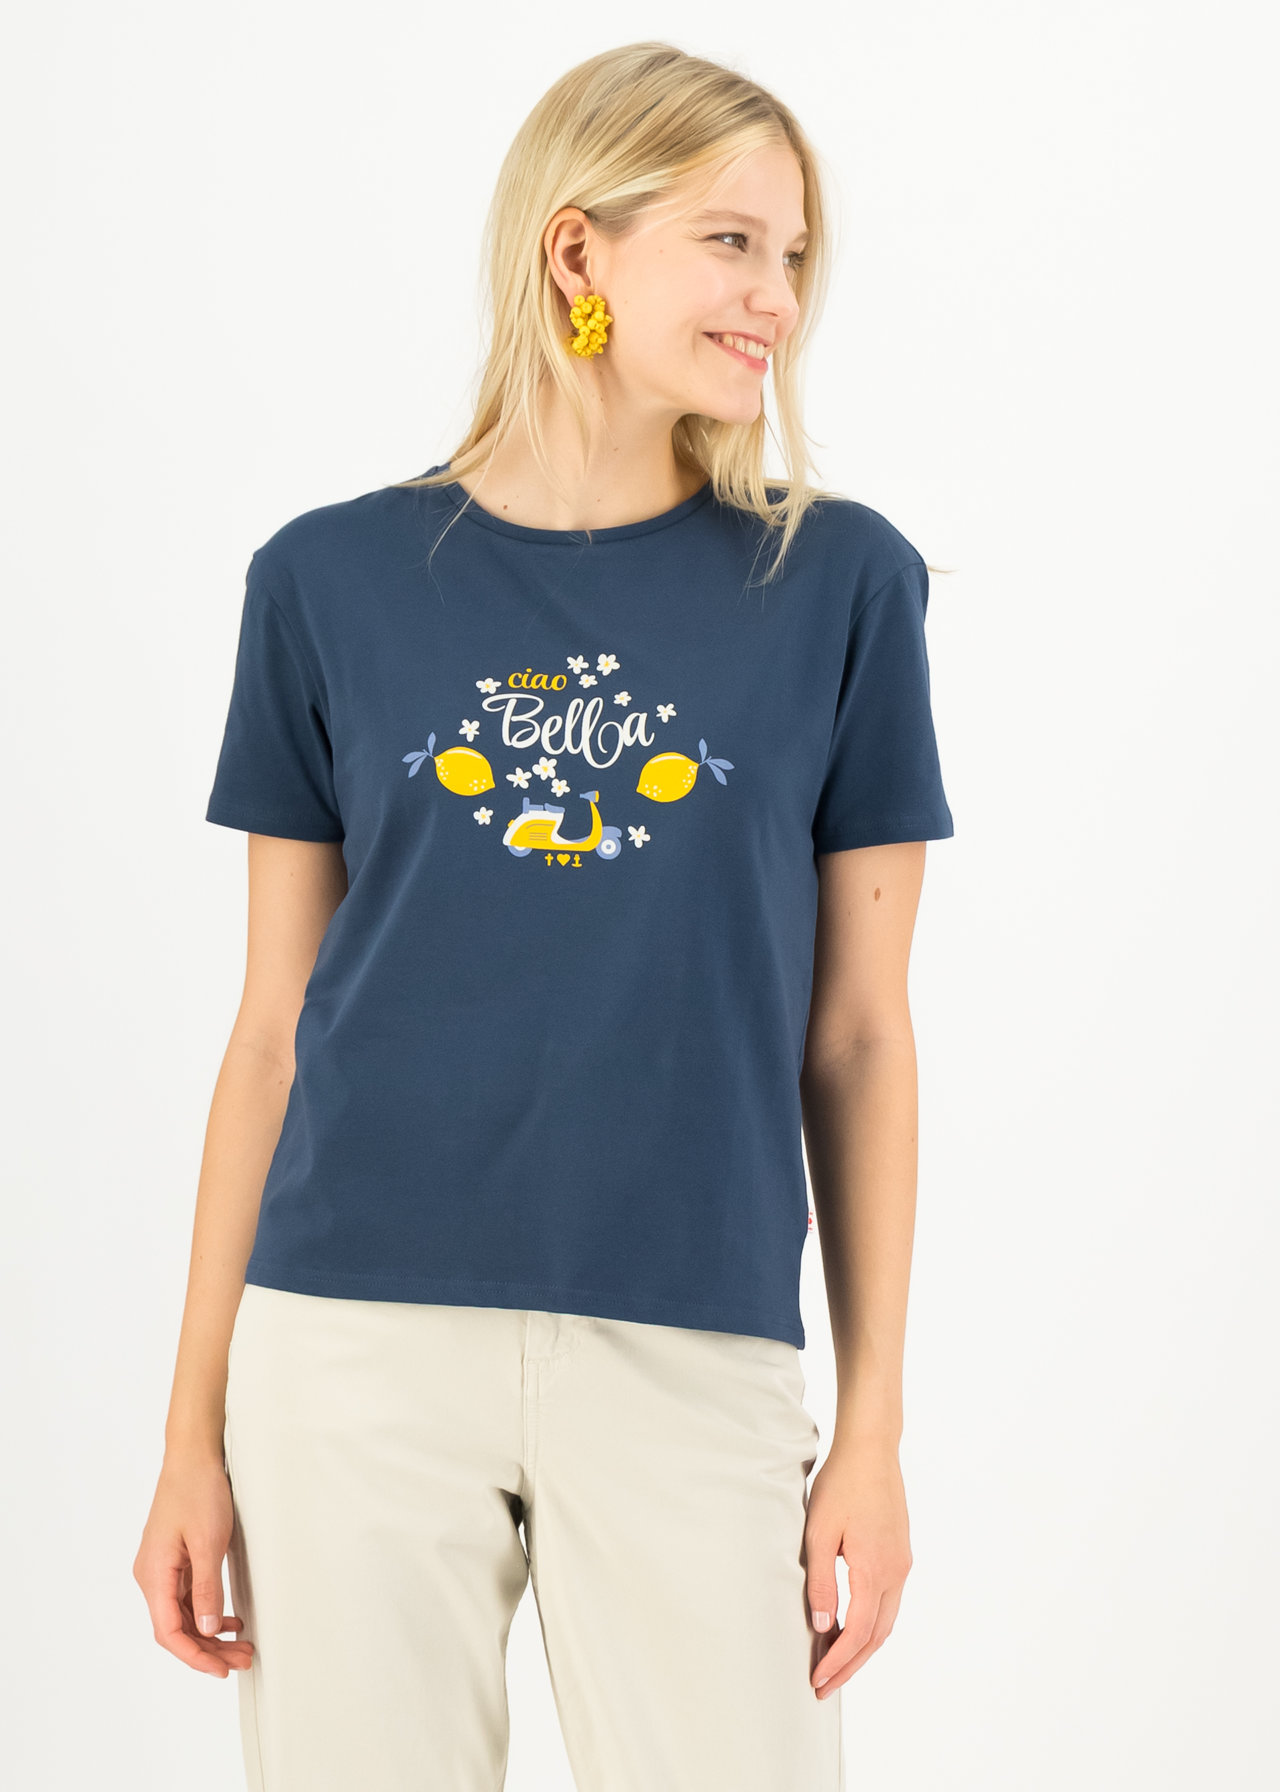 Blutsgeschwister T-Shirt La Dolce Vita, mare azzurro , Zitronen, Vespa